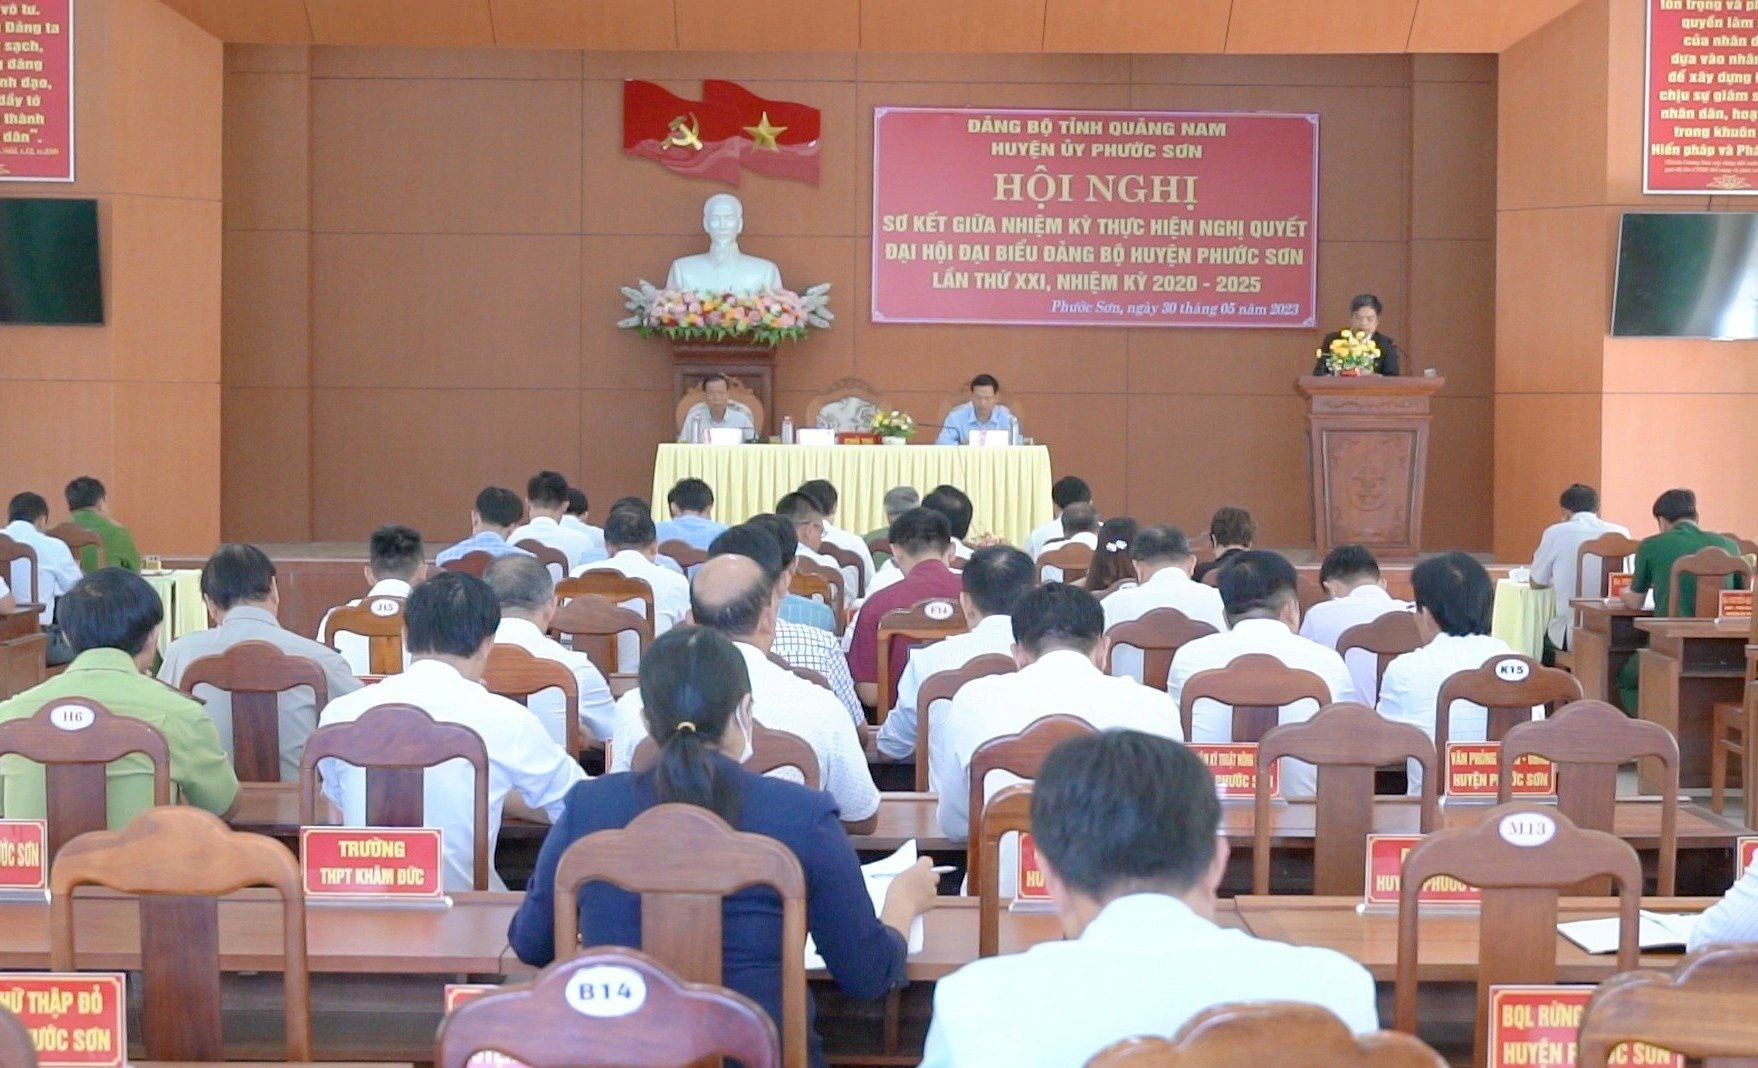 Huyện ủy Phước Sơn tổ chức hội nghị sơ kết giữa nhiệm kỳ thực hiện Nghị quyết Đại hội đại biểu Đảng bộ huyện lần thứ XXI (nhiệm kỳ 2020 - 2025).